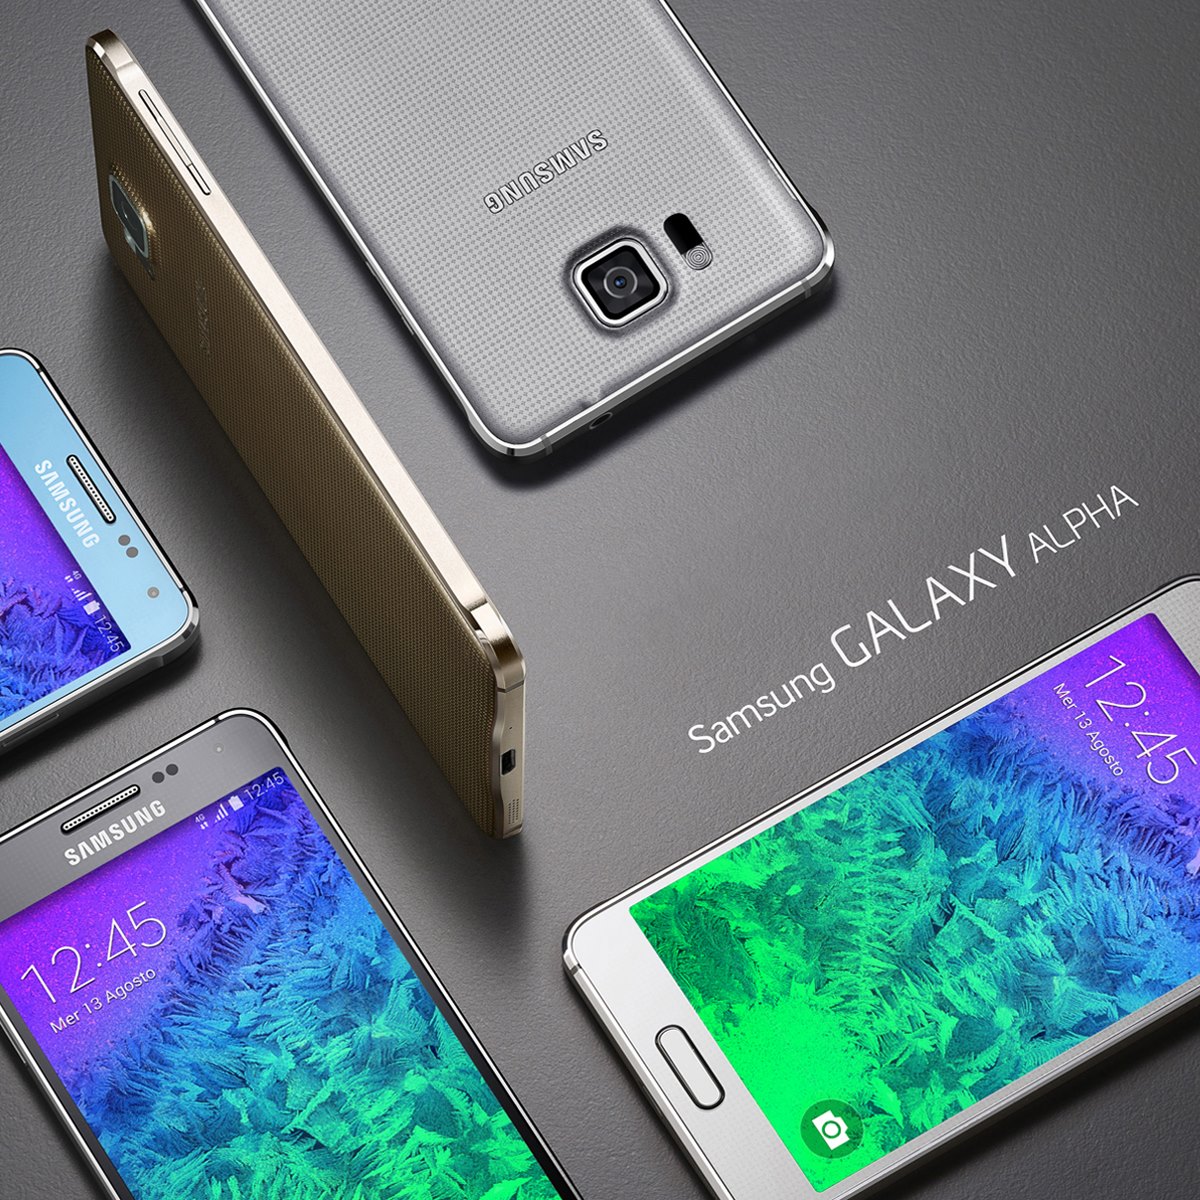 Samsung Galaxy Alpha pronto per i negozi italiani: eccolo sul sito ufficiale